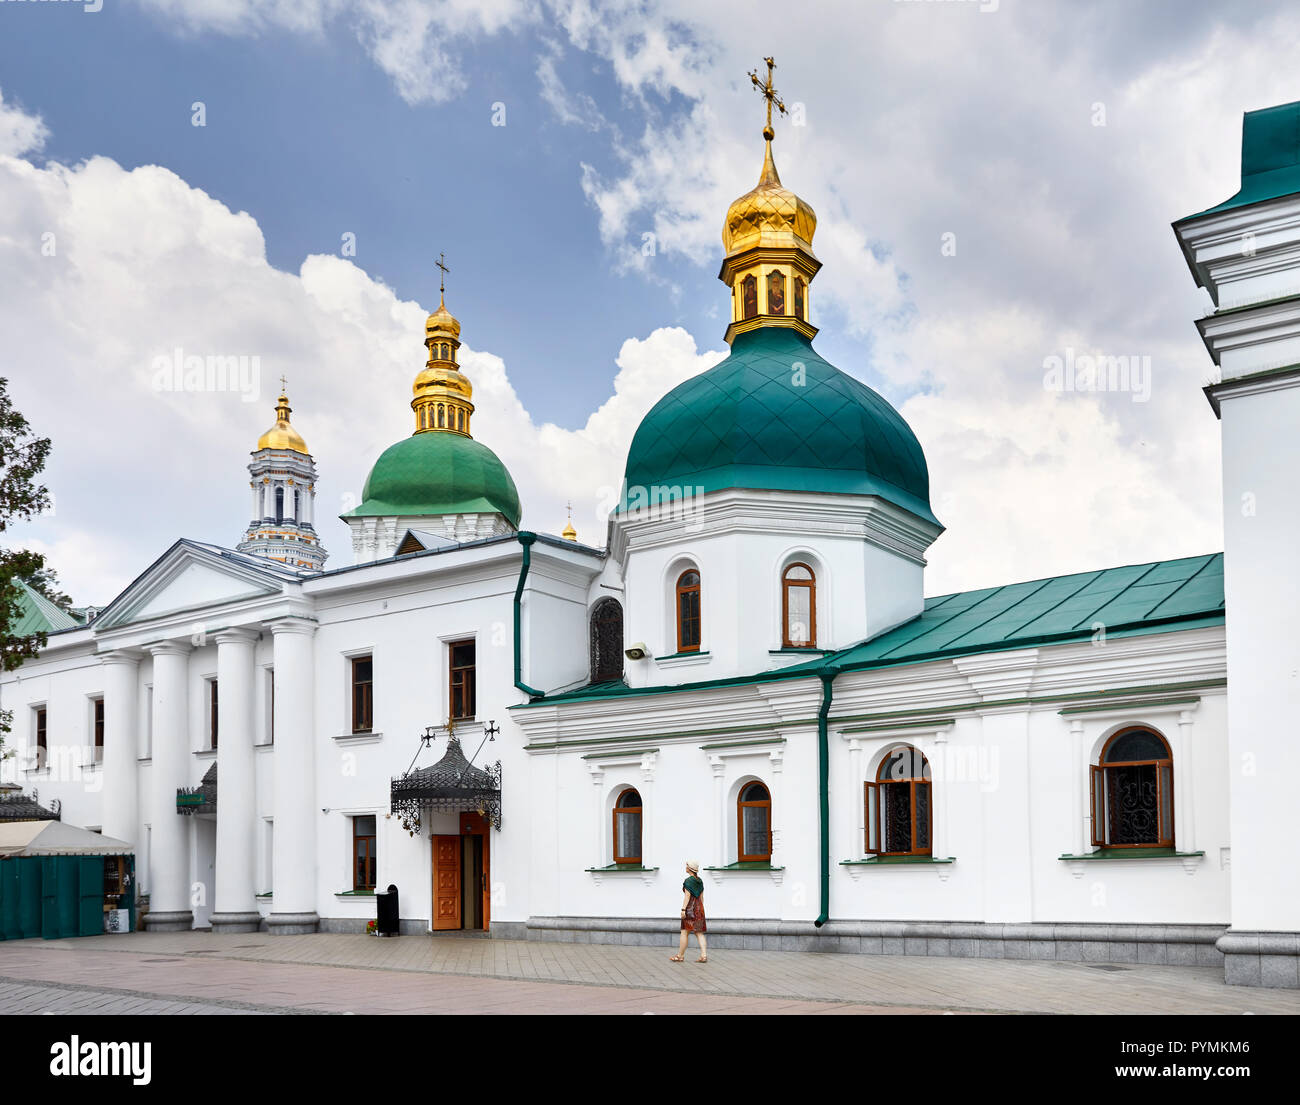 Frau in hat man in der Nähe der Kirche mit goldenen Kuppeln in Kiew Pechersk Lavra Christian komplex. Alte historische Architektur in Kiew, Ukraine Stockfoto